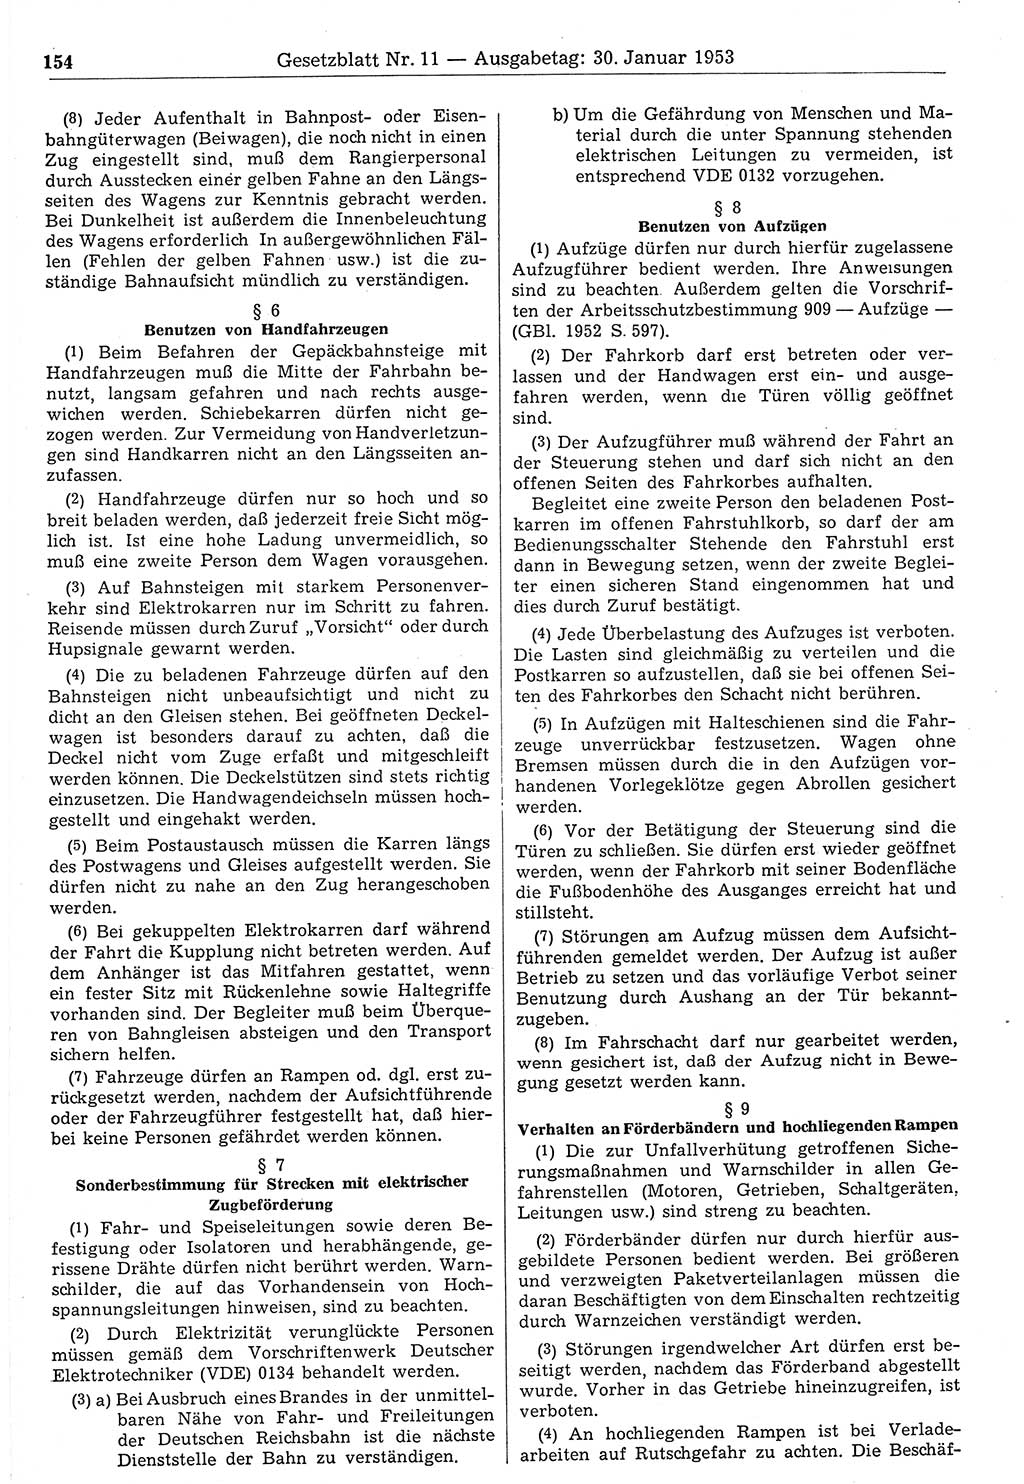 Gesetzblatt (GBl.) der Deutschen Demokratischen Republik (DDR) 1953, Seite 154 (GBl. DDR 1953, S. 154)